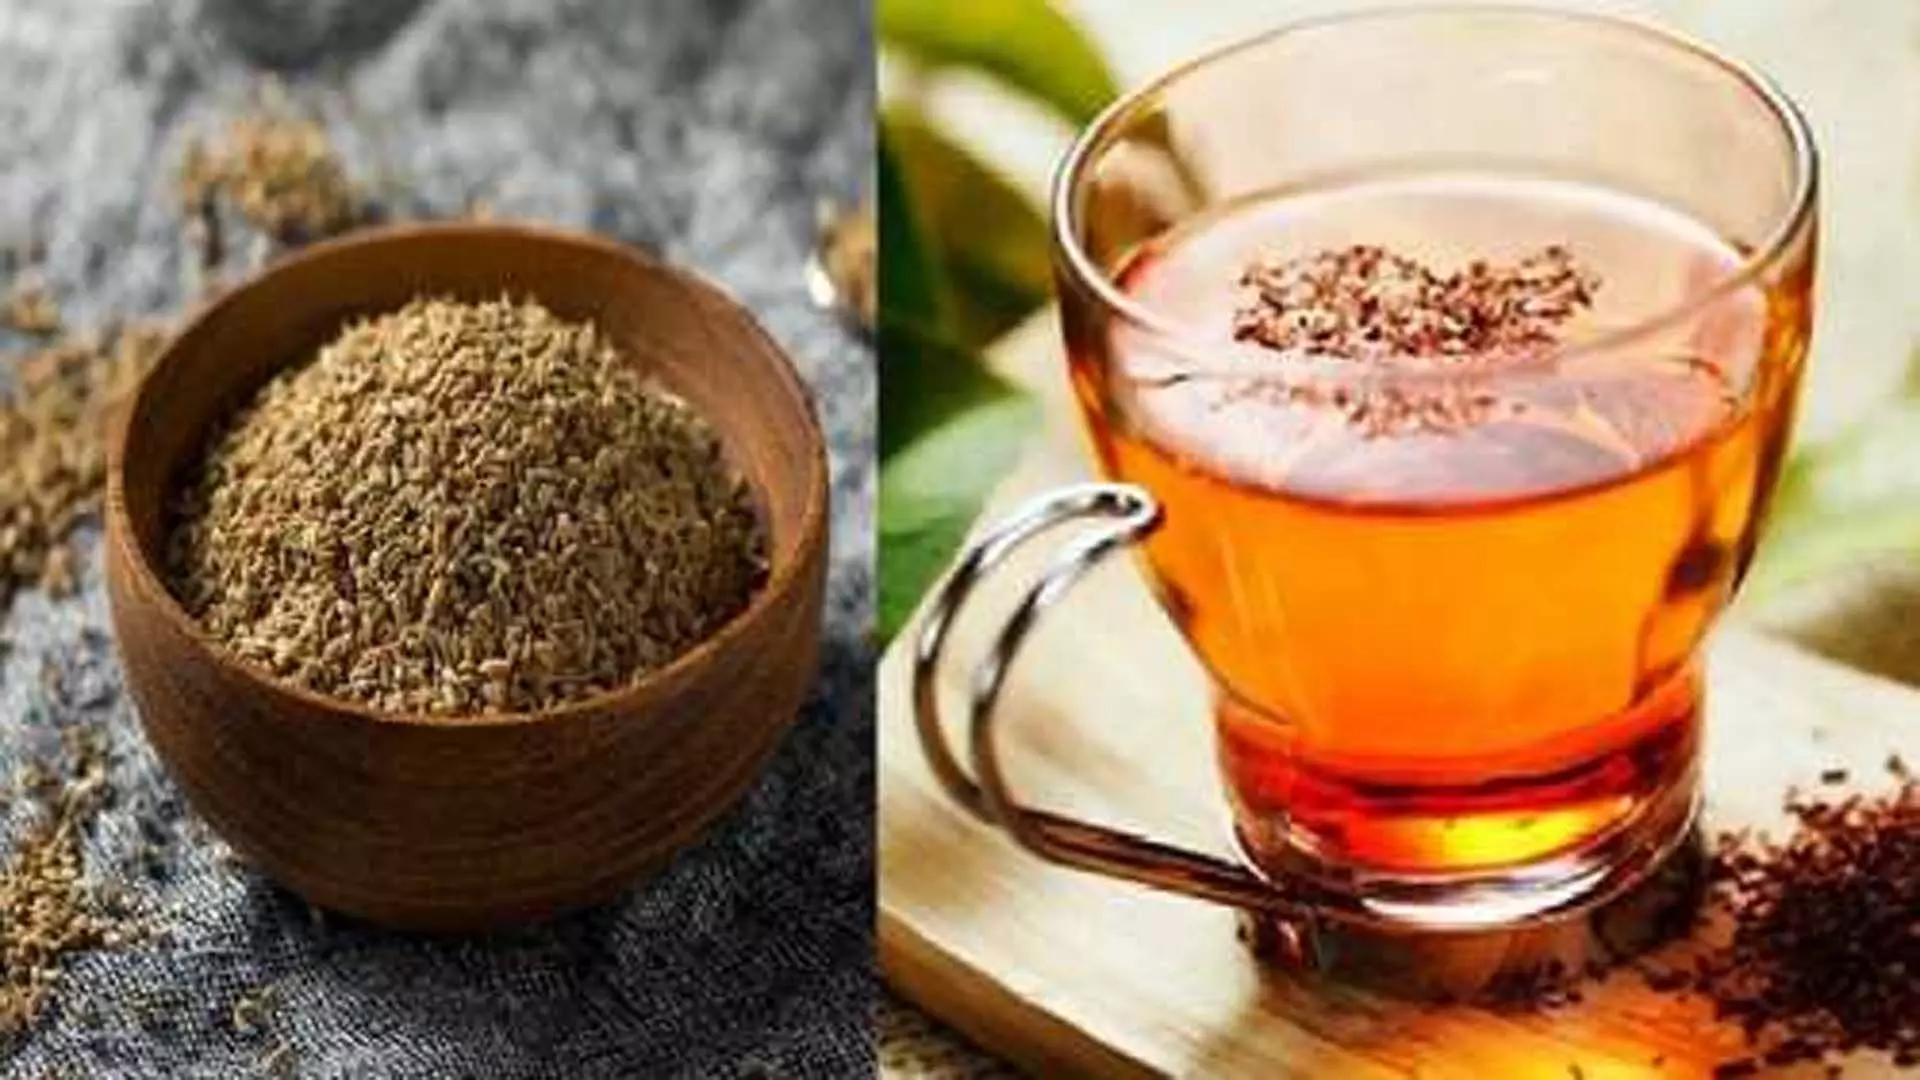 इन अद्भुत फायदों के लिए गर्मियों में खाली पेट पिएं अजवाइन की चाय